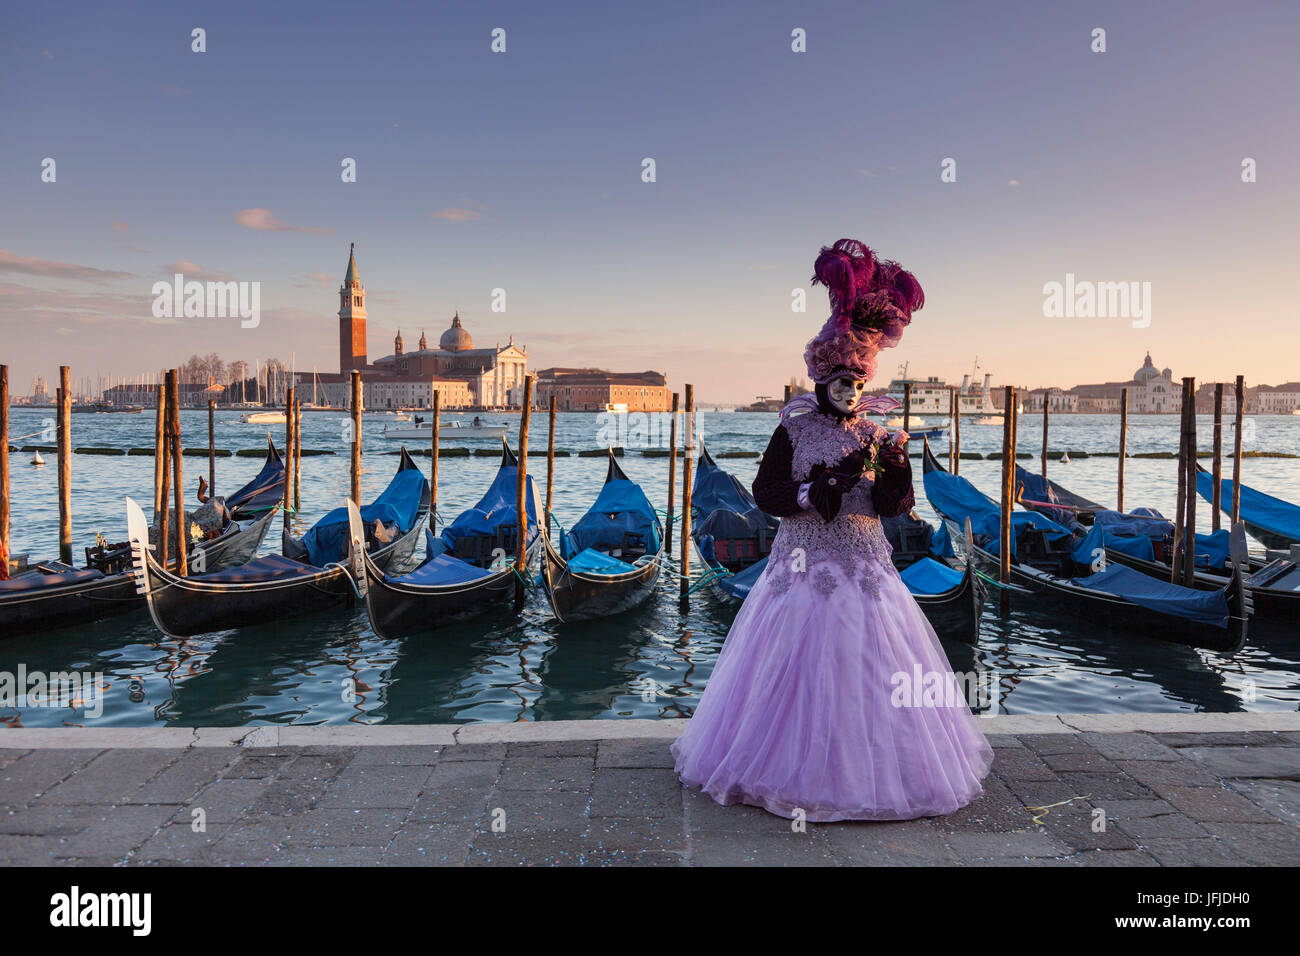 Venedig, Veneto, Italien, eine traditionelle Maske Venedig Karneval mit St-George-Insel und einige Gondeln im Hintergrund bei Sonnenuntergang, Stockfoto